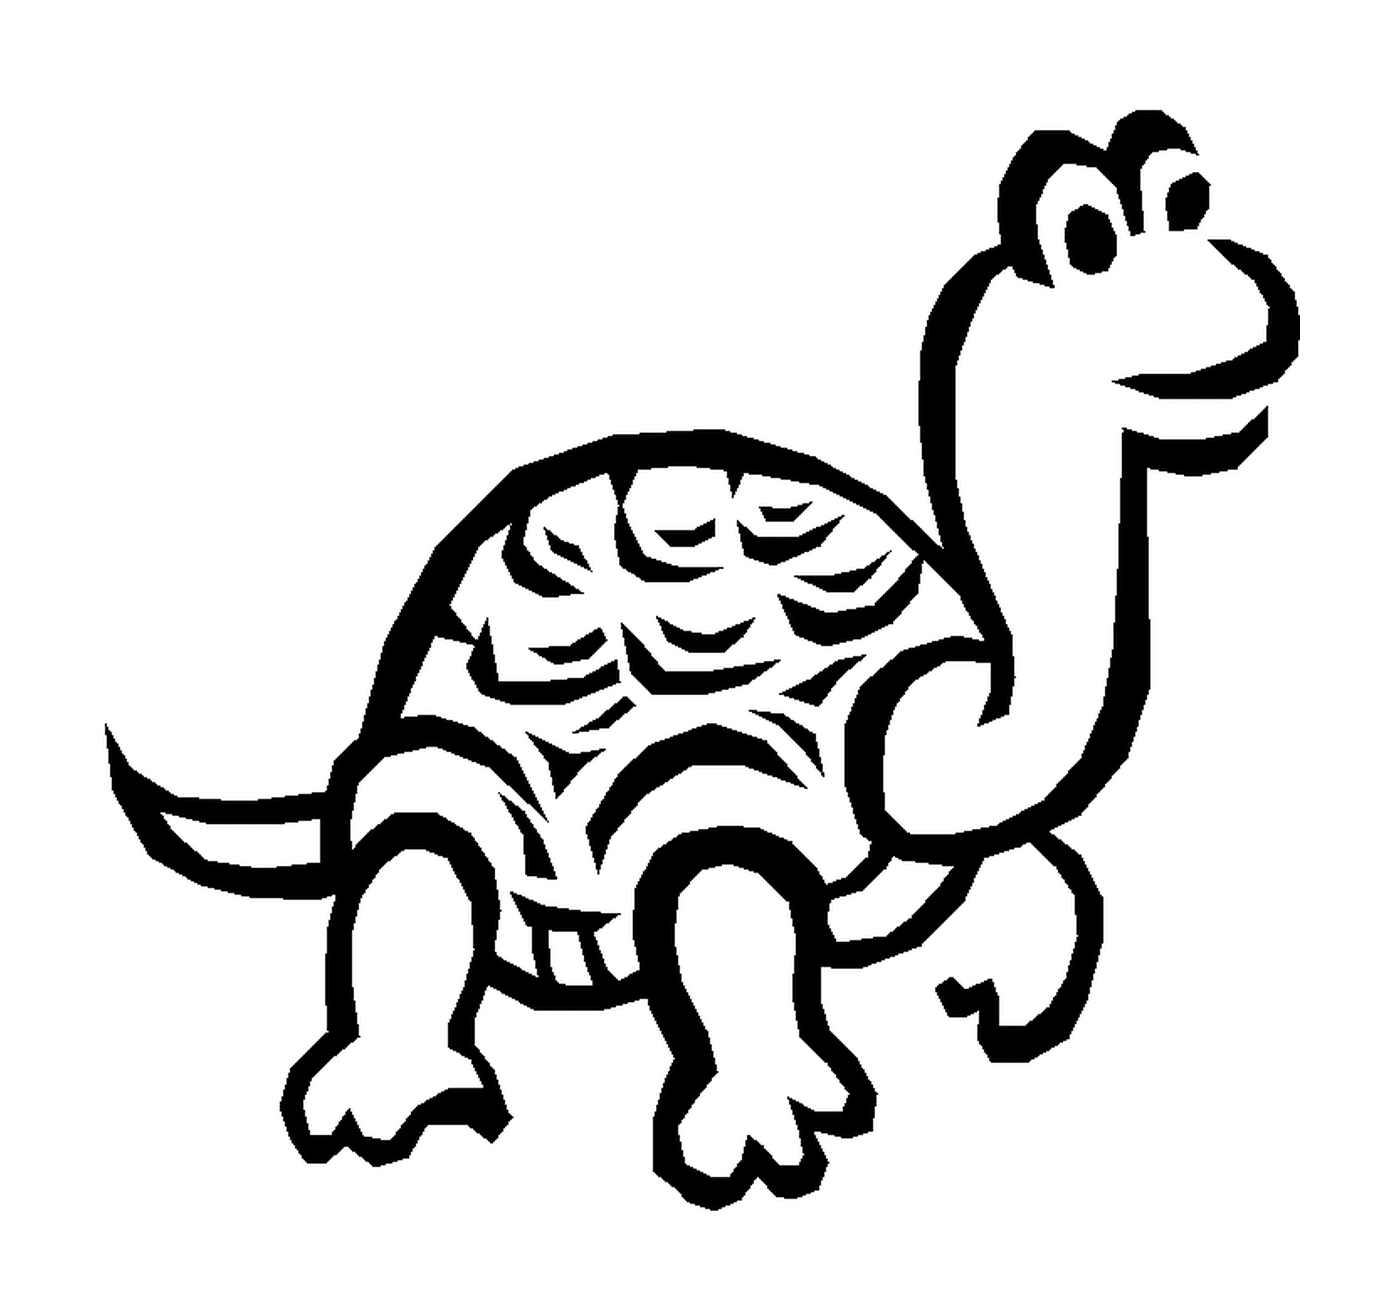  Tartaruga com um pescoço grande 